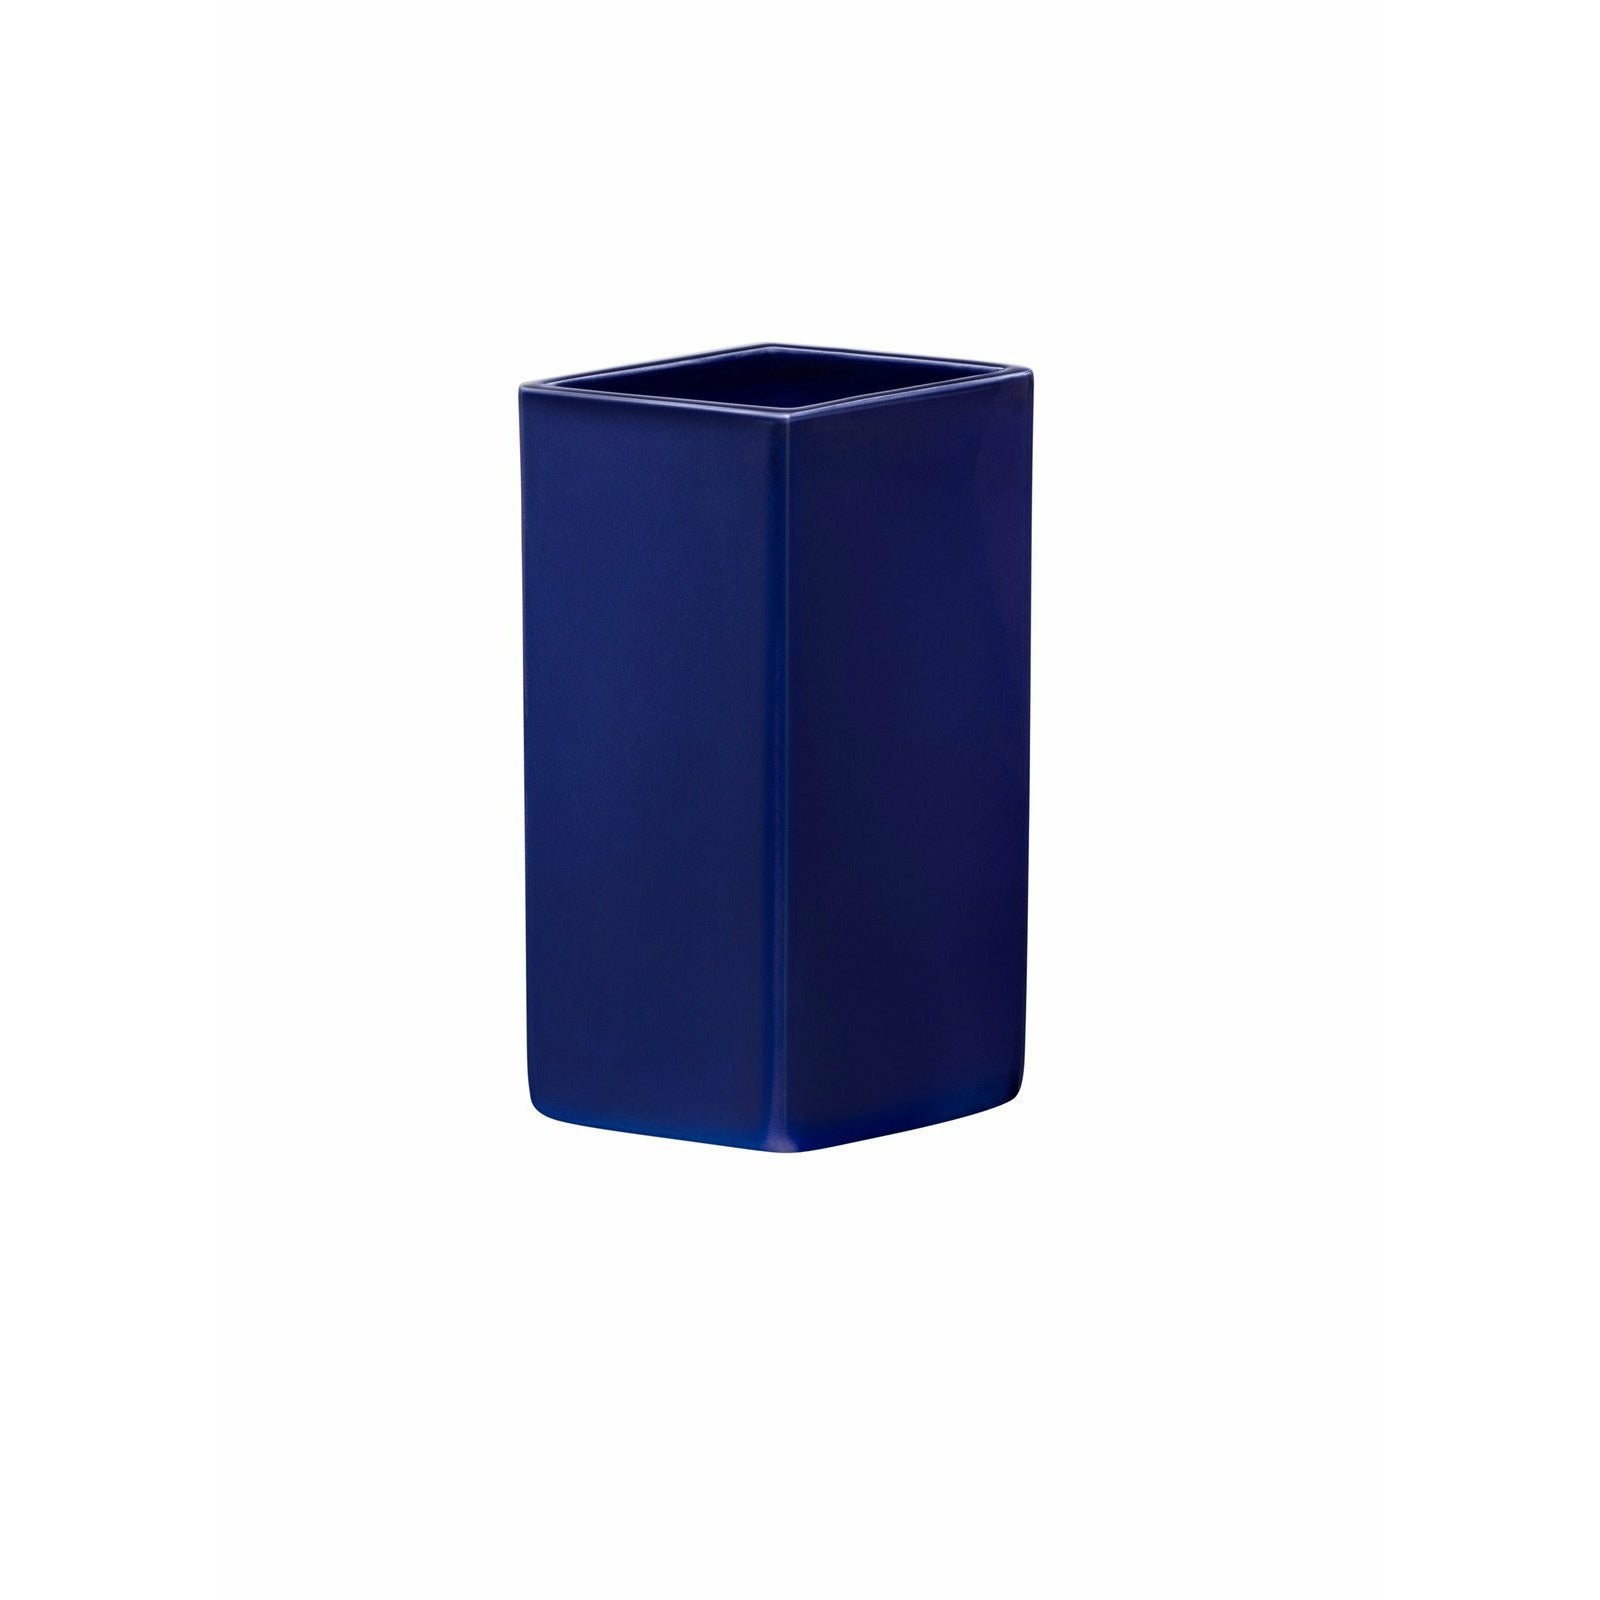 Iittala Ruutu keramisk vase mørkeblå, 18cm